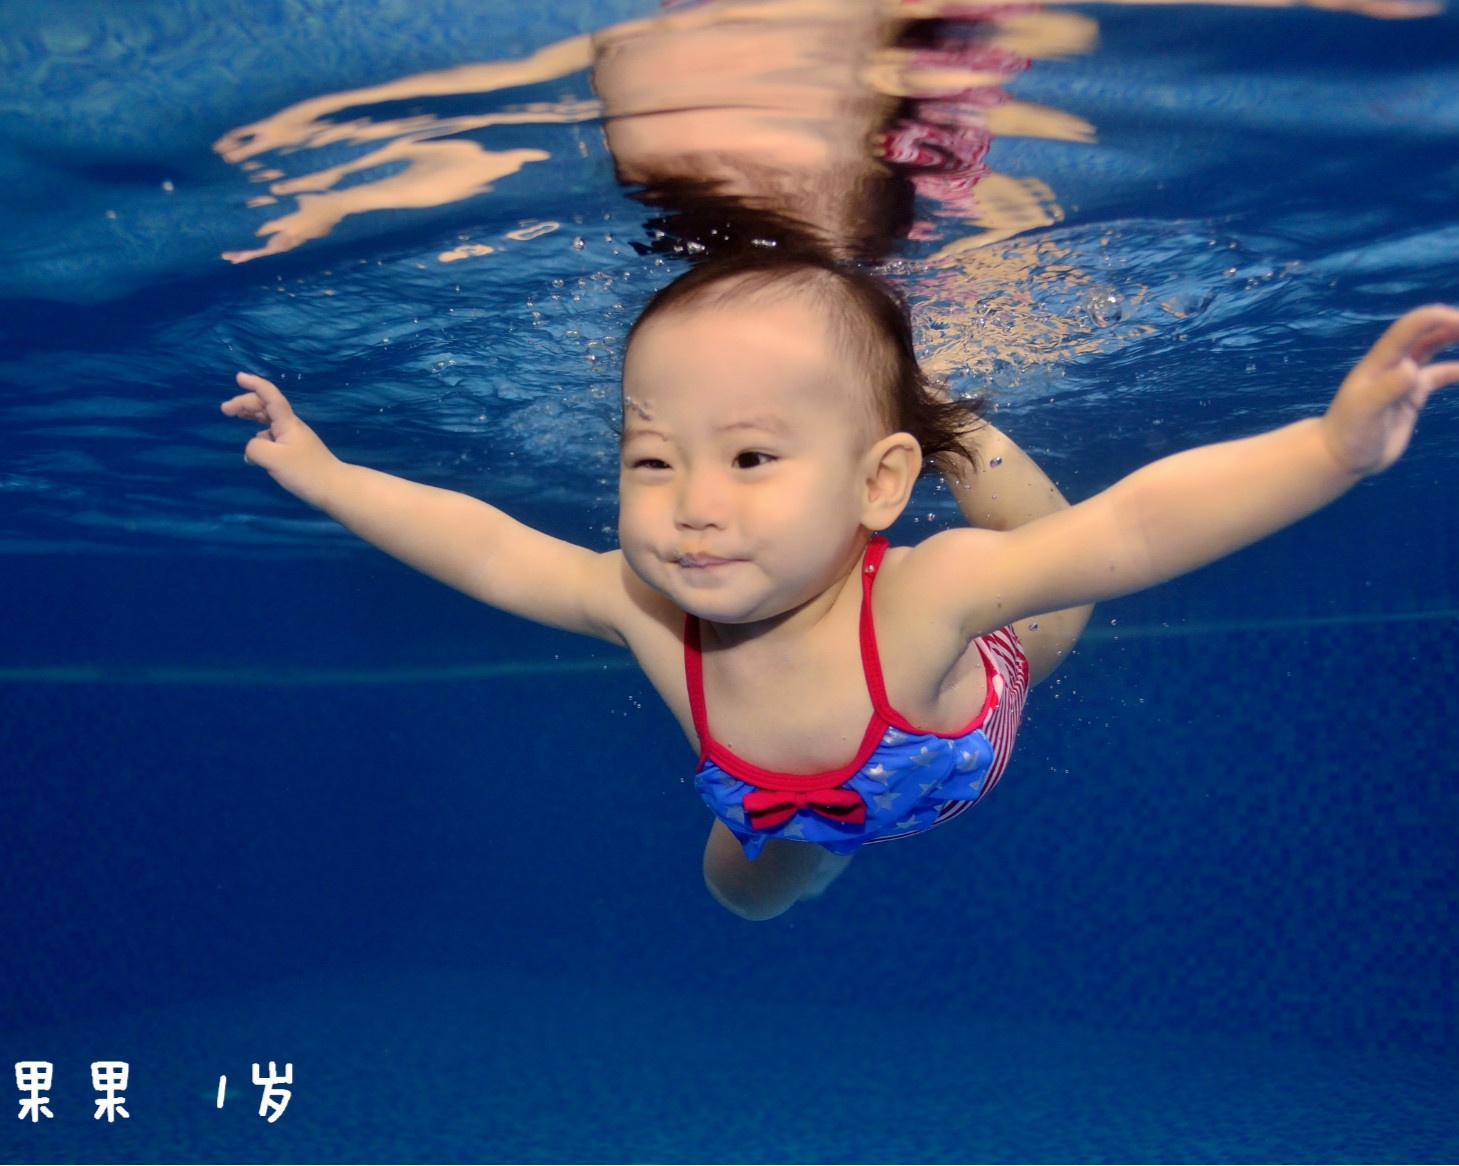 【开始点灯啦】第二届乐游宝宝全国游泳大赛即日起开始线上点灯啦！